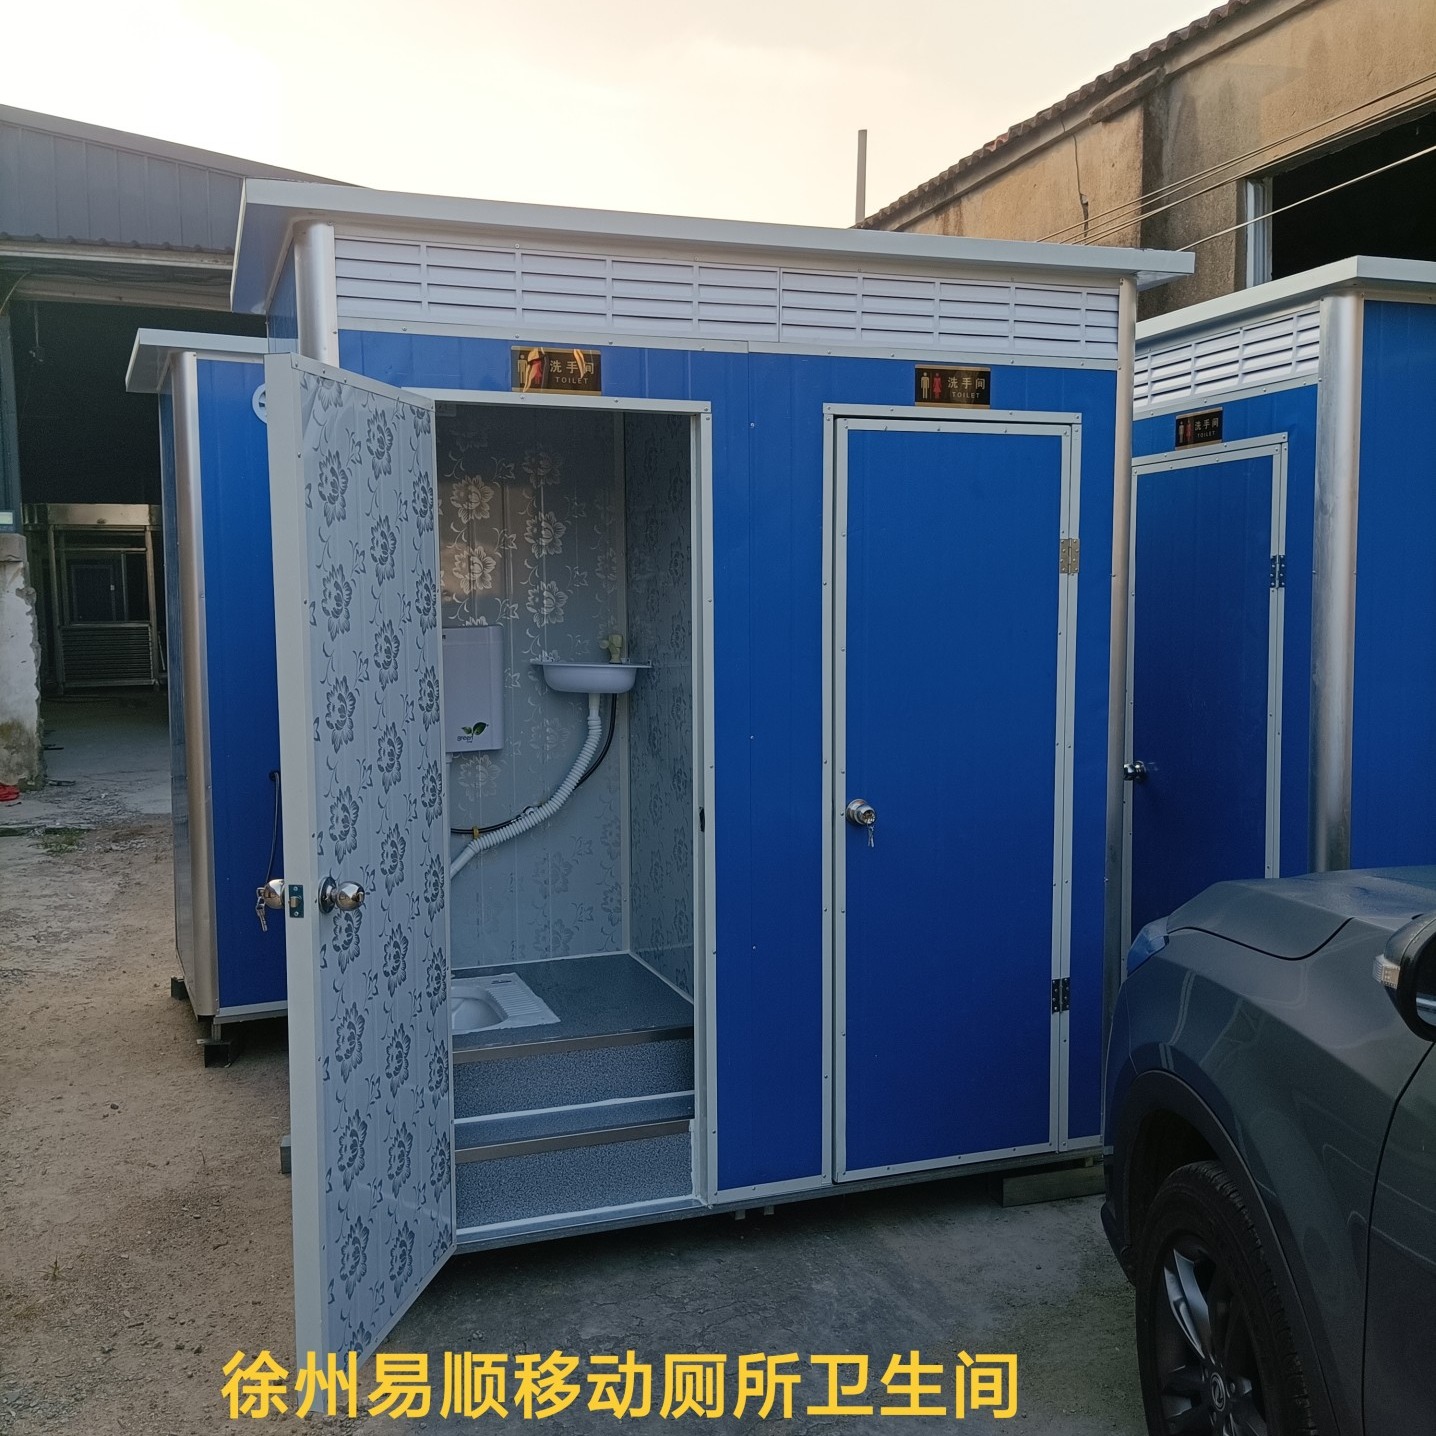 徐州农村简易环保洗手间带淋浴房户外雕花板集成移动公厕所卫生间定做